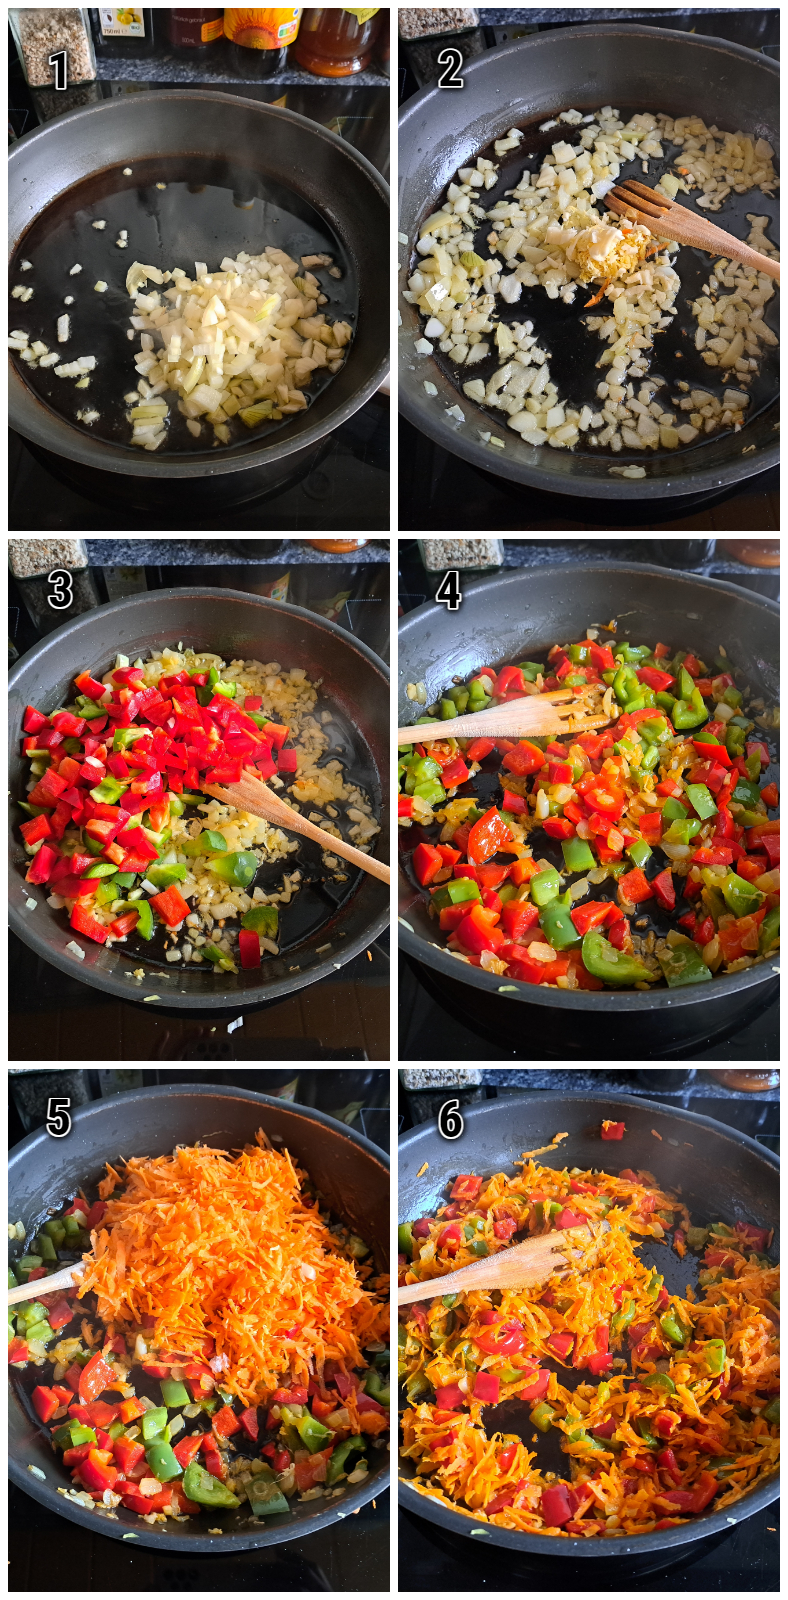 Die Zubereitung von Chakalaka: Ein Bild zeigt verschiedene Gemüse und Gewürze, die für die Herstellung von afrikanischen Gemüsepfanne benötigt werden. Eine bunte und aromatische Mischung, bereit für die Verarbeitung und Zubereitung.